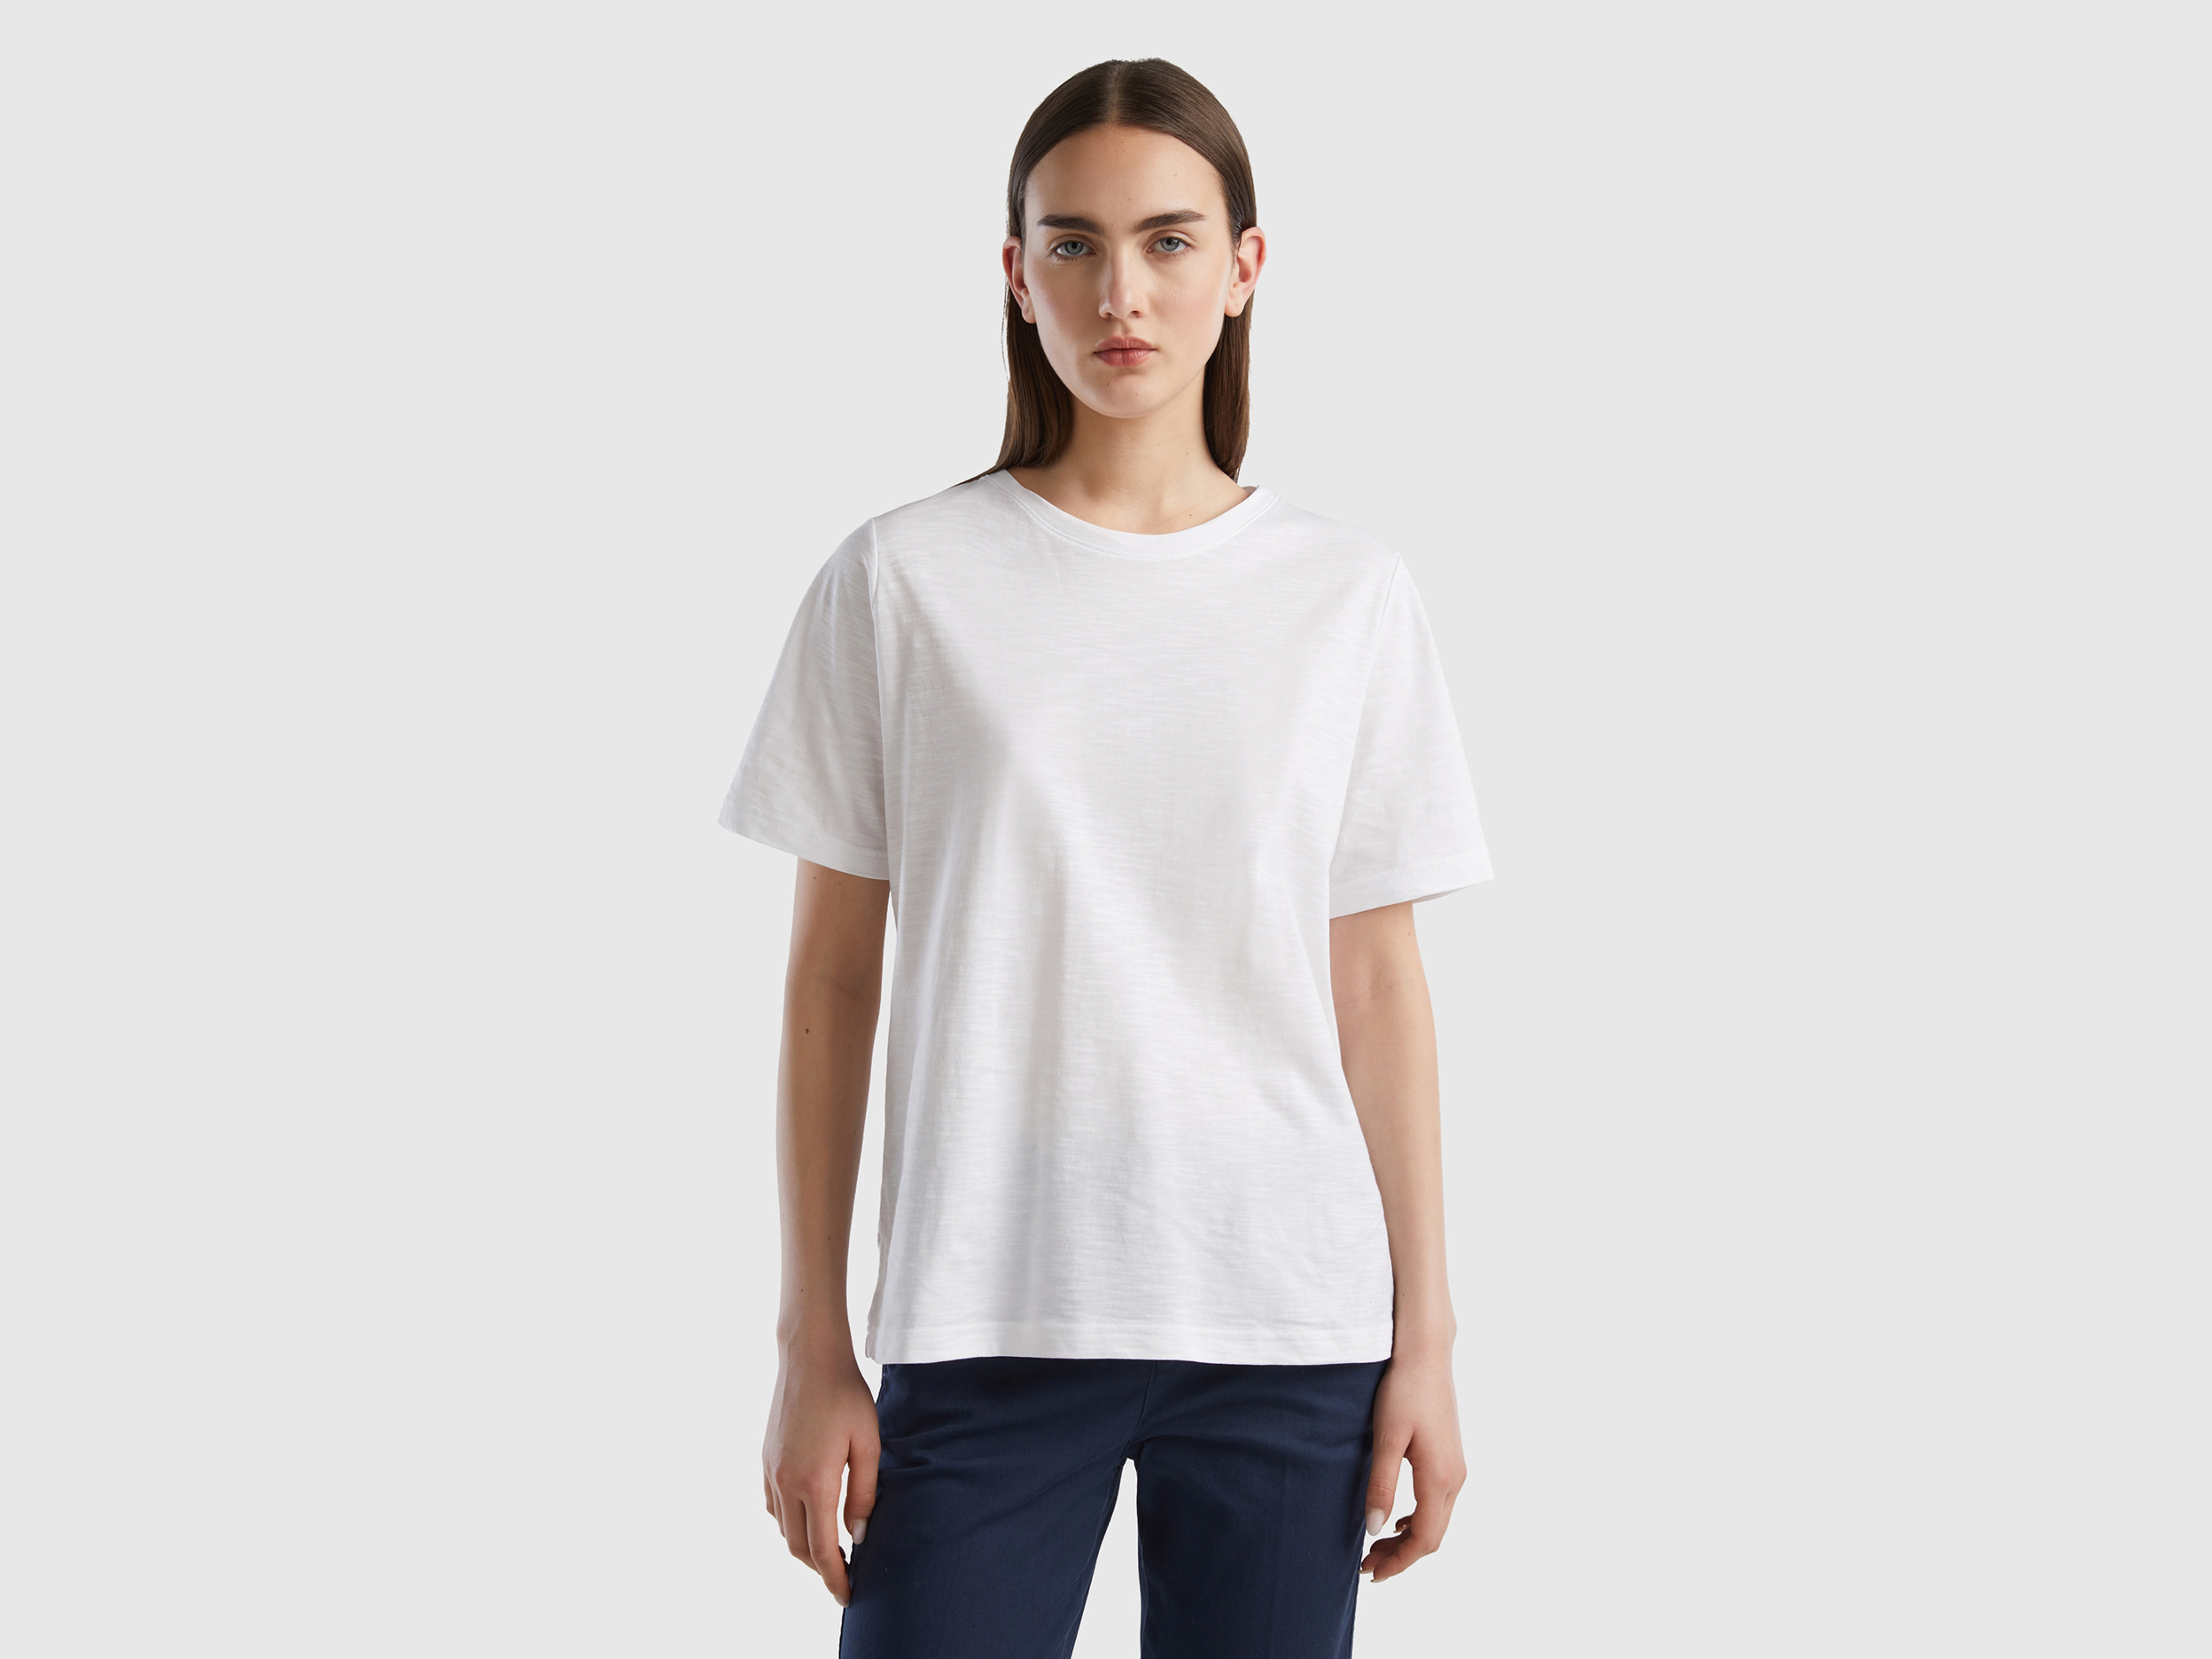 Benetton, Crew Neck T-shirt In Slub Cotton, size XL, White, Women